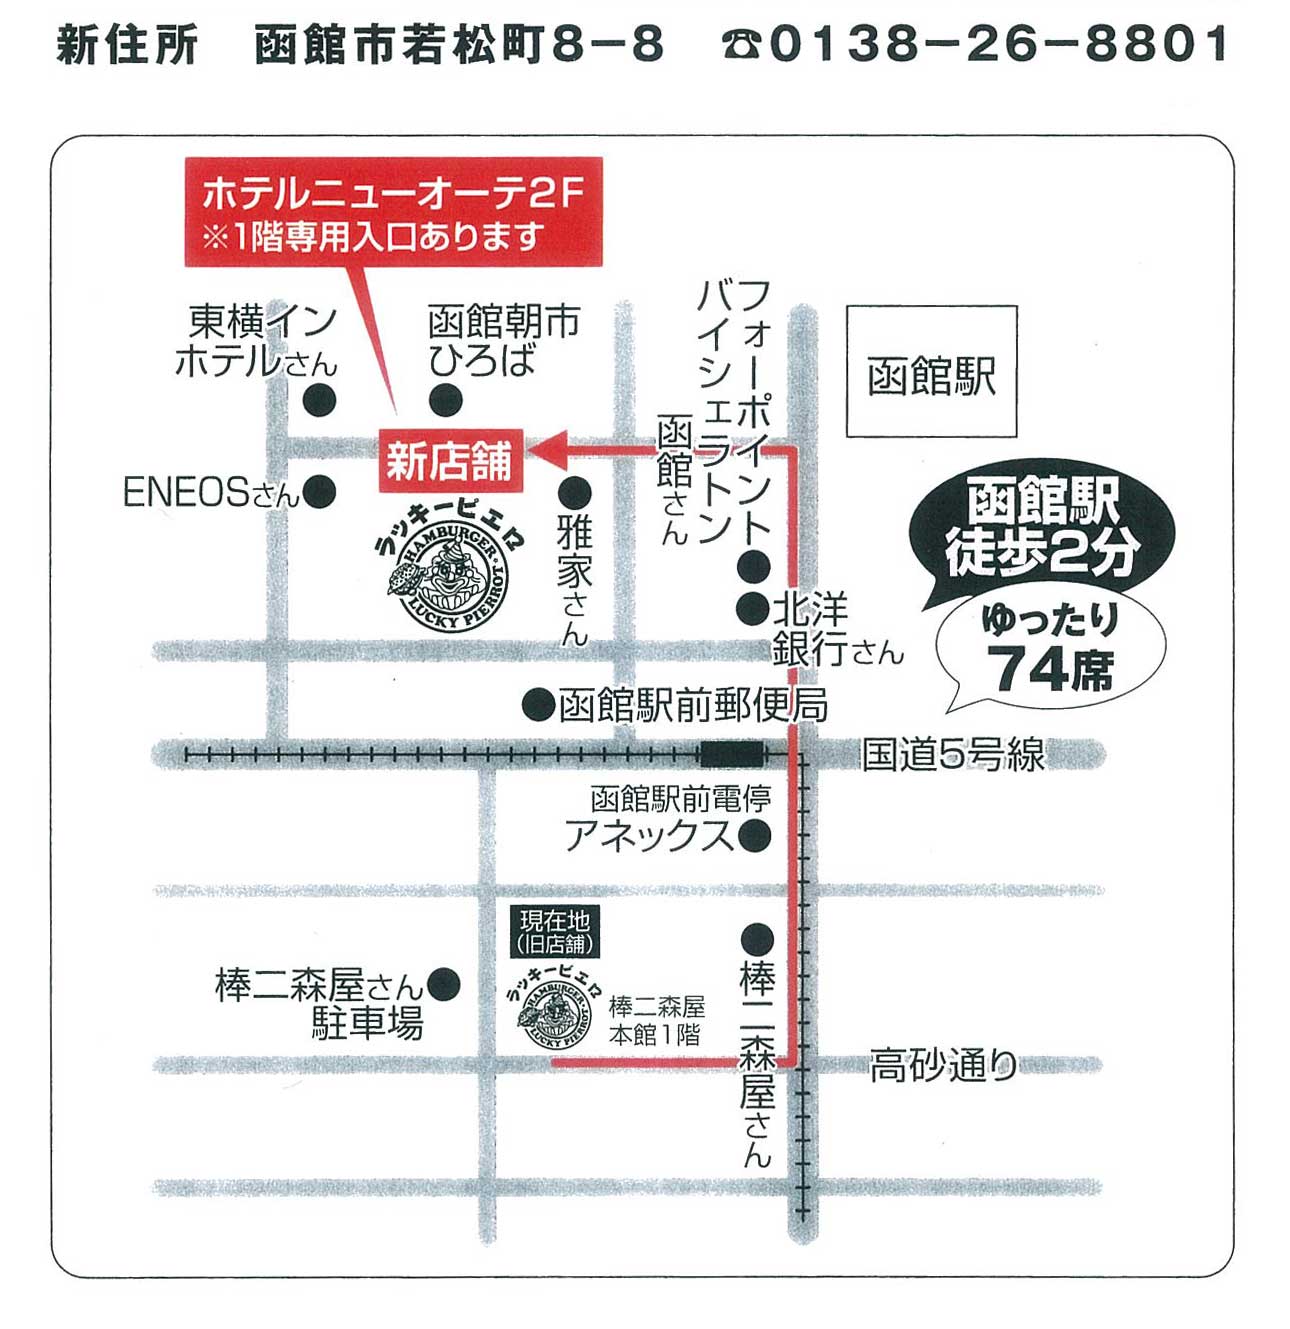 ラッキーピエロ函館駅前店案内地図